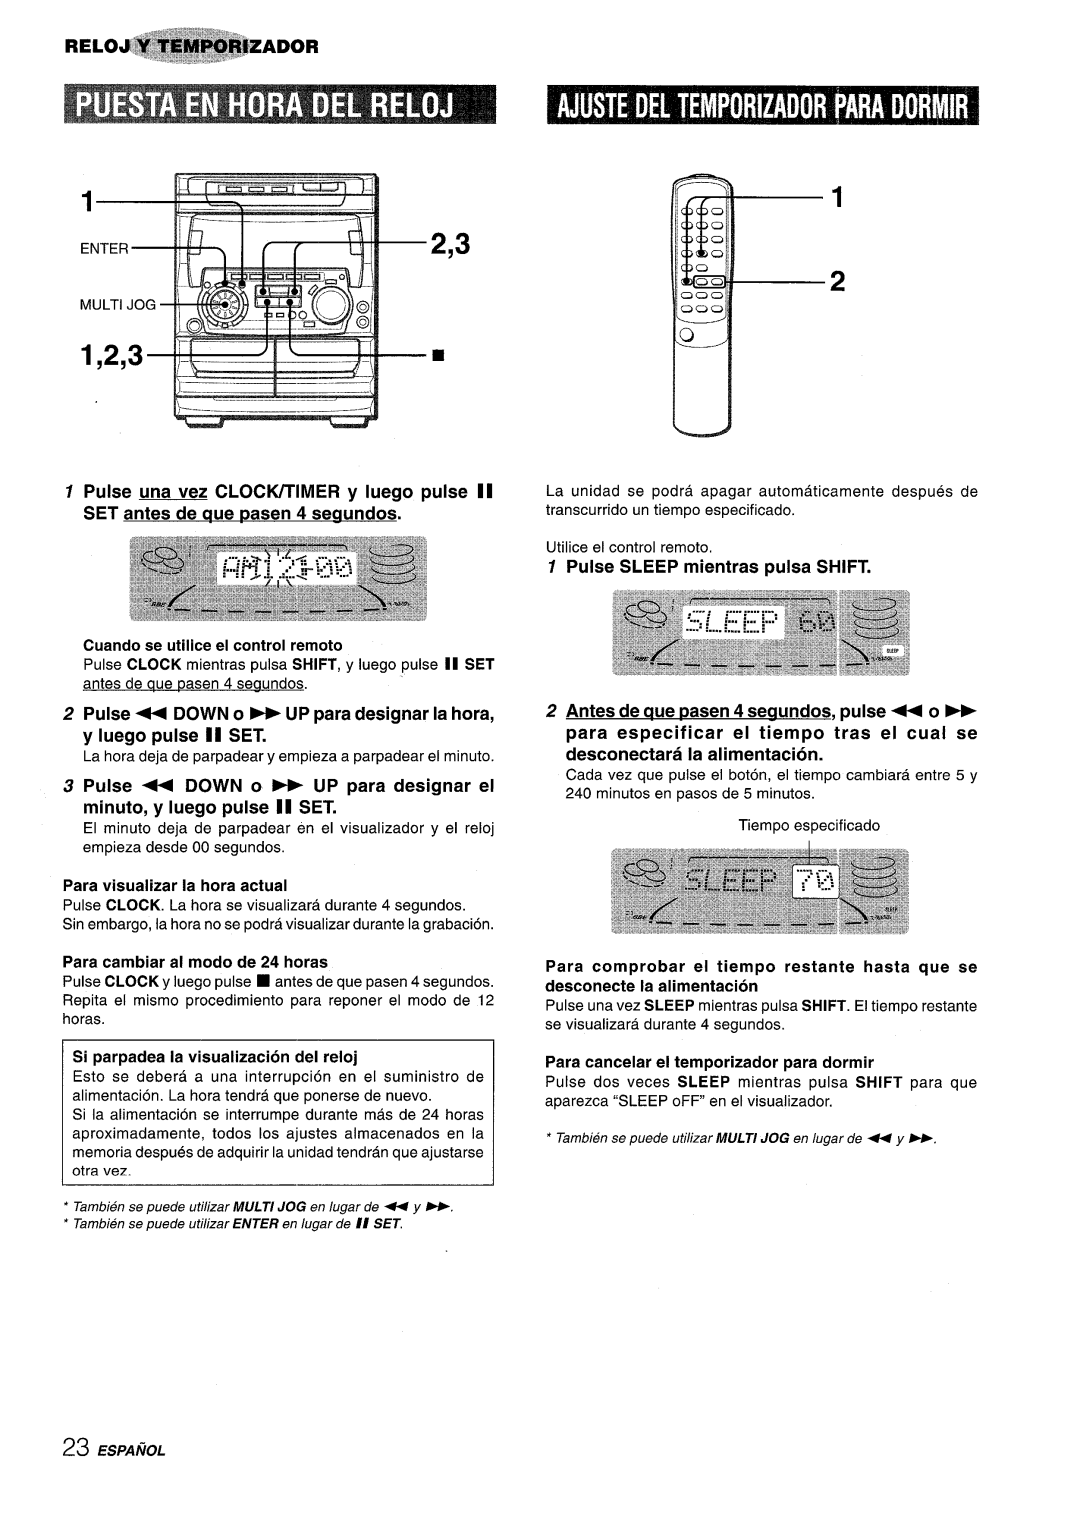 Sony NSX-A707 manual Pulse + DOWN o - UP para designar el minute, y Iuego pulse II SET, Para visualizer la hors actual 